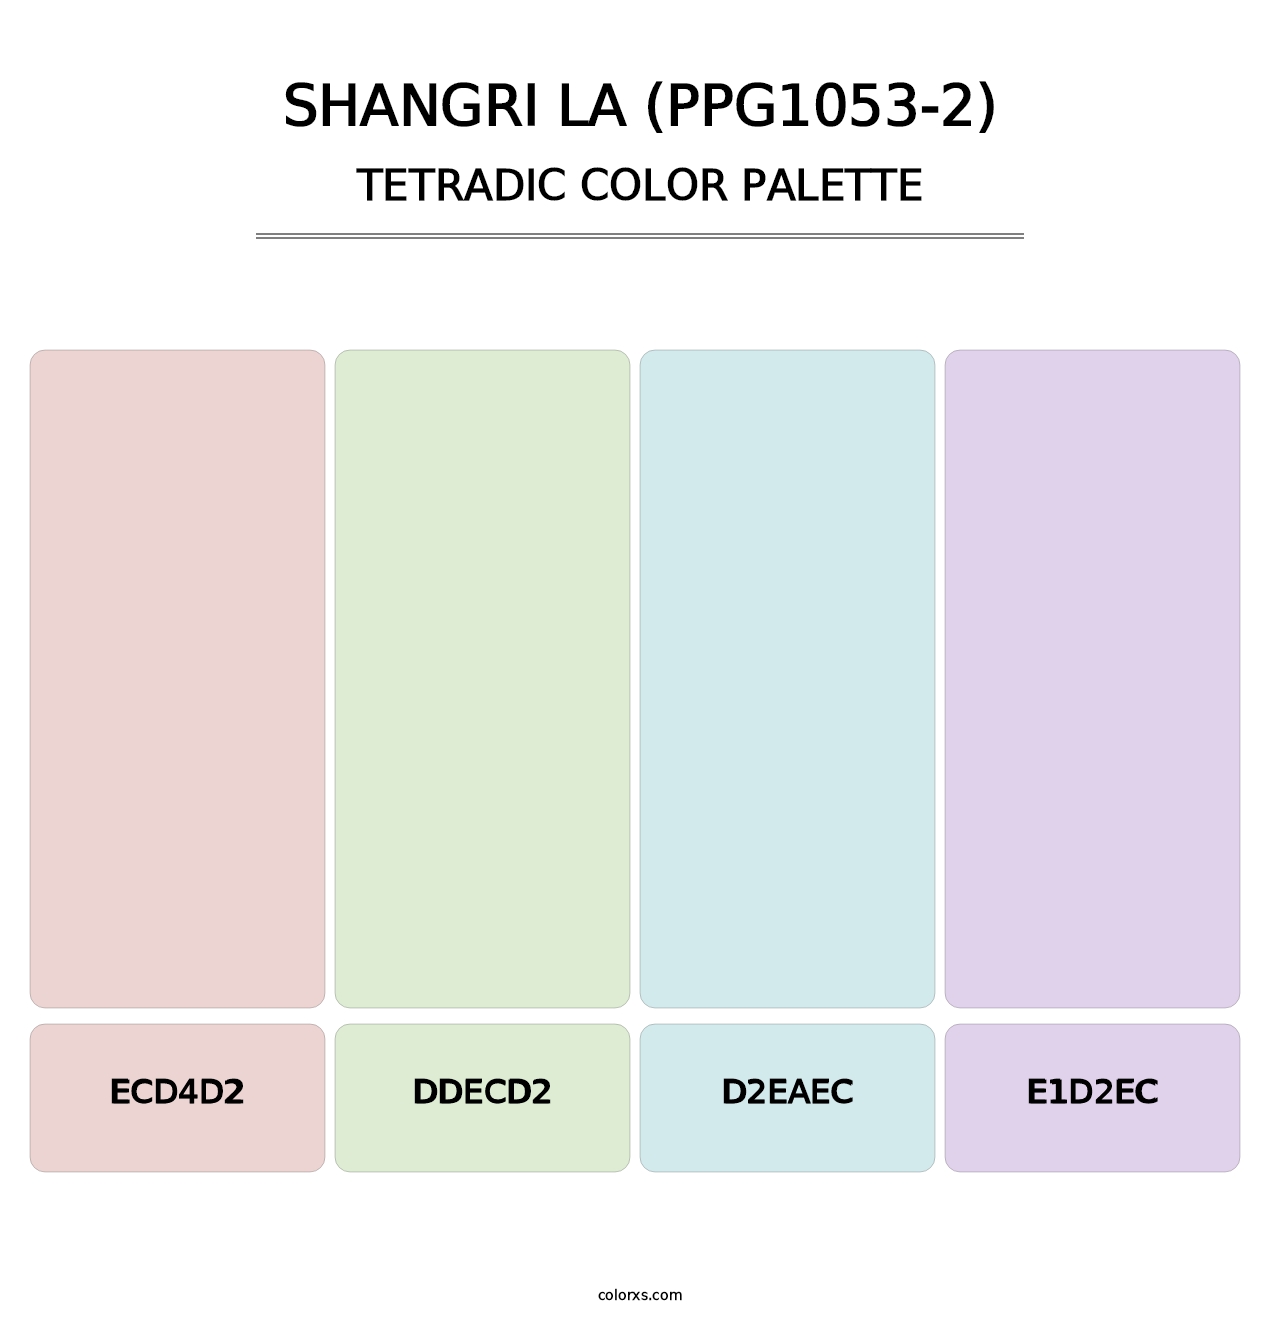 Shangri La (PPG1053-2) - Tetradic Color Palette